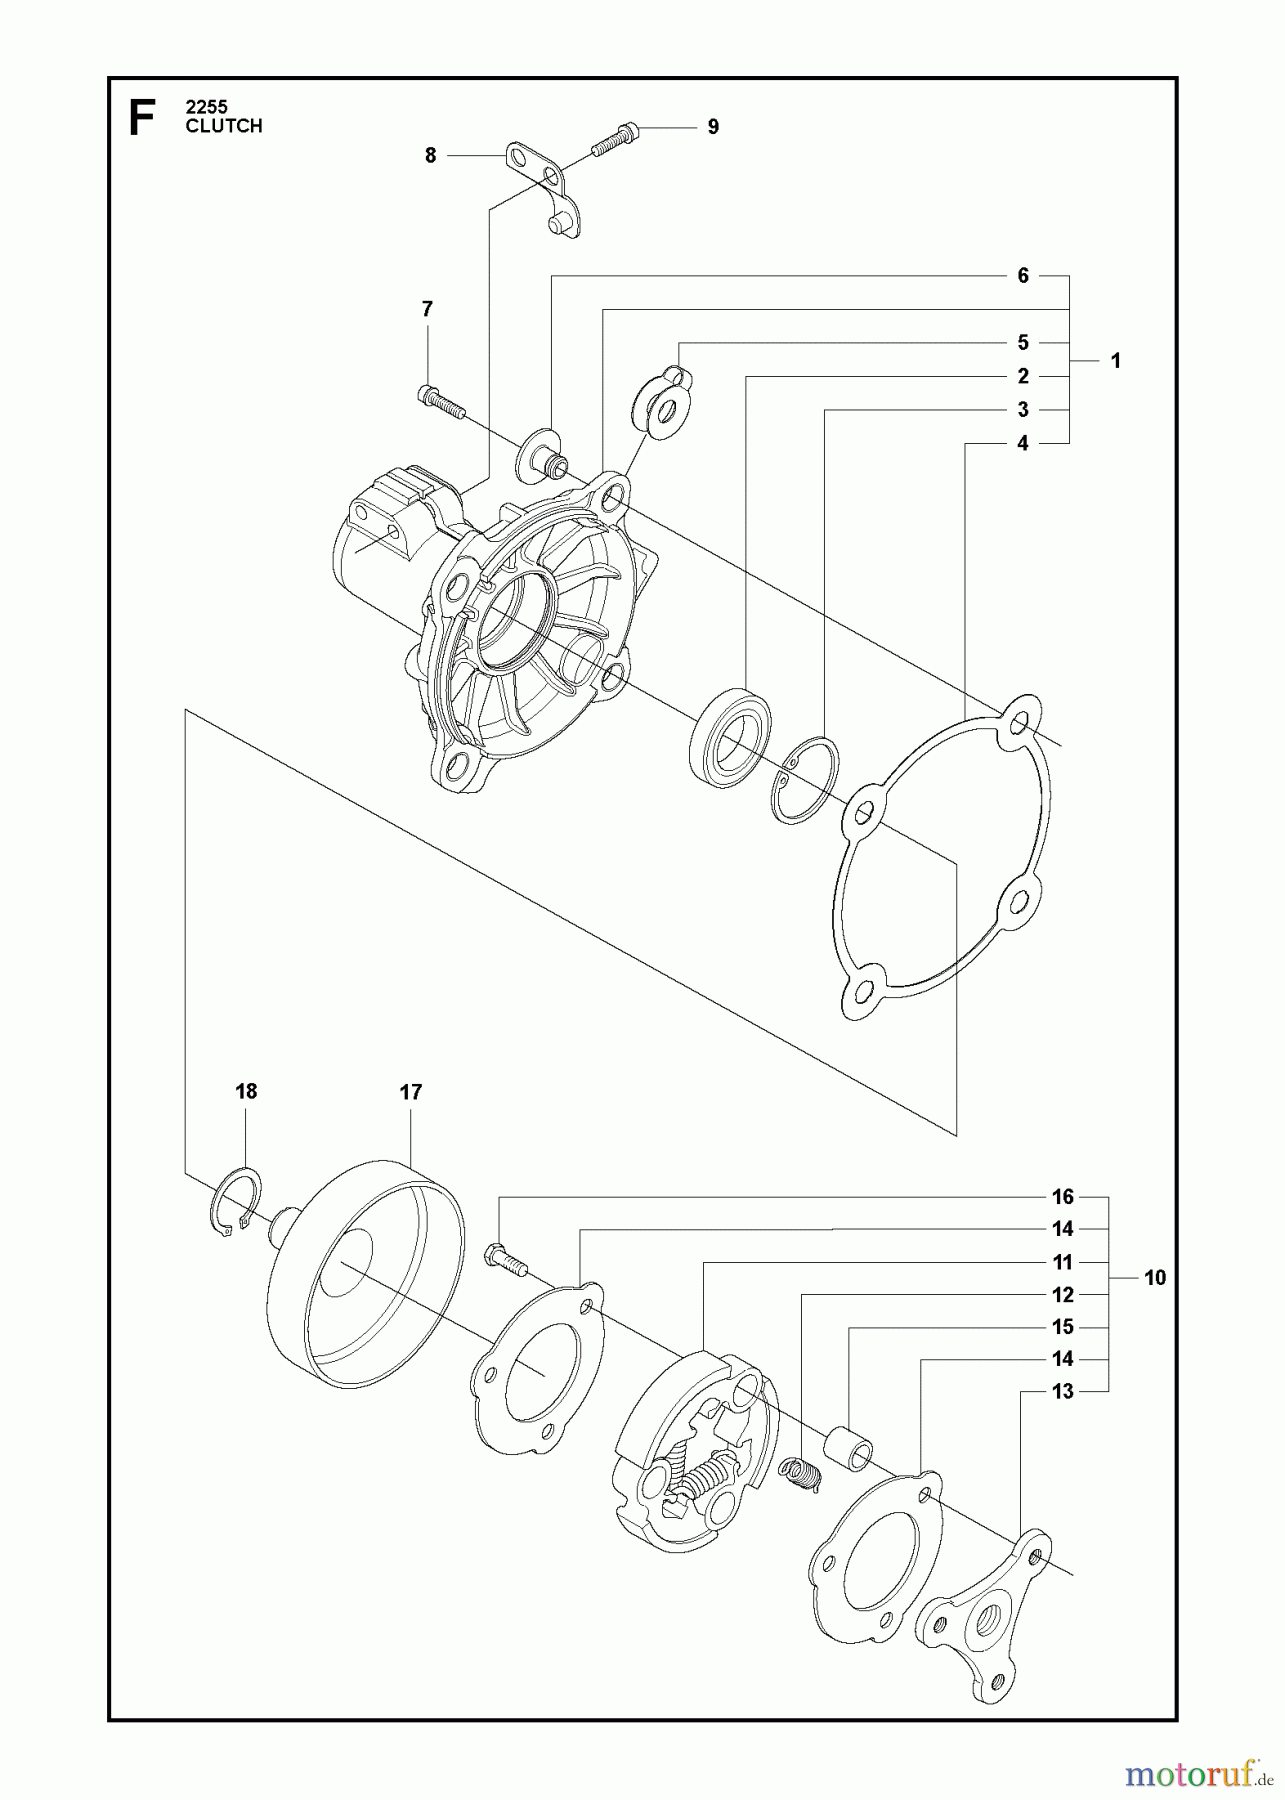  Jonsered Motorsensen, Trimmer BC2255 - Jonsered Brushcutter (2011-01) CLUTCH